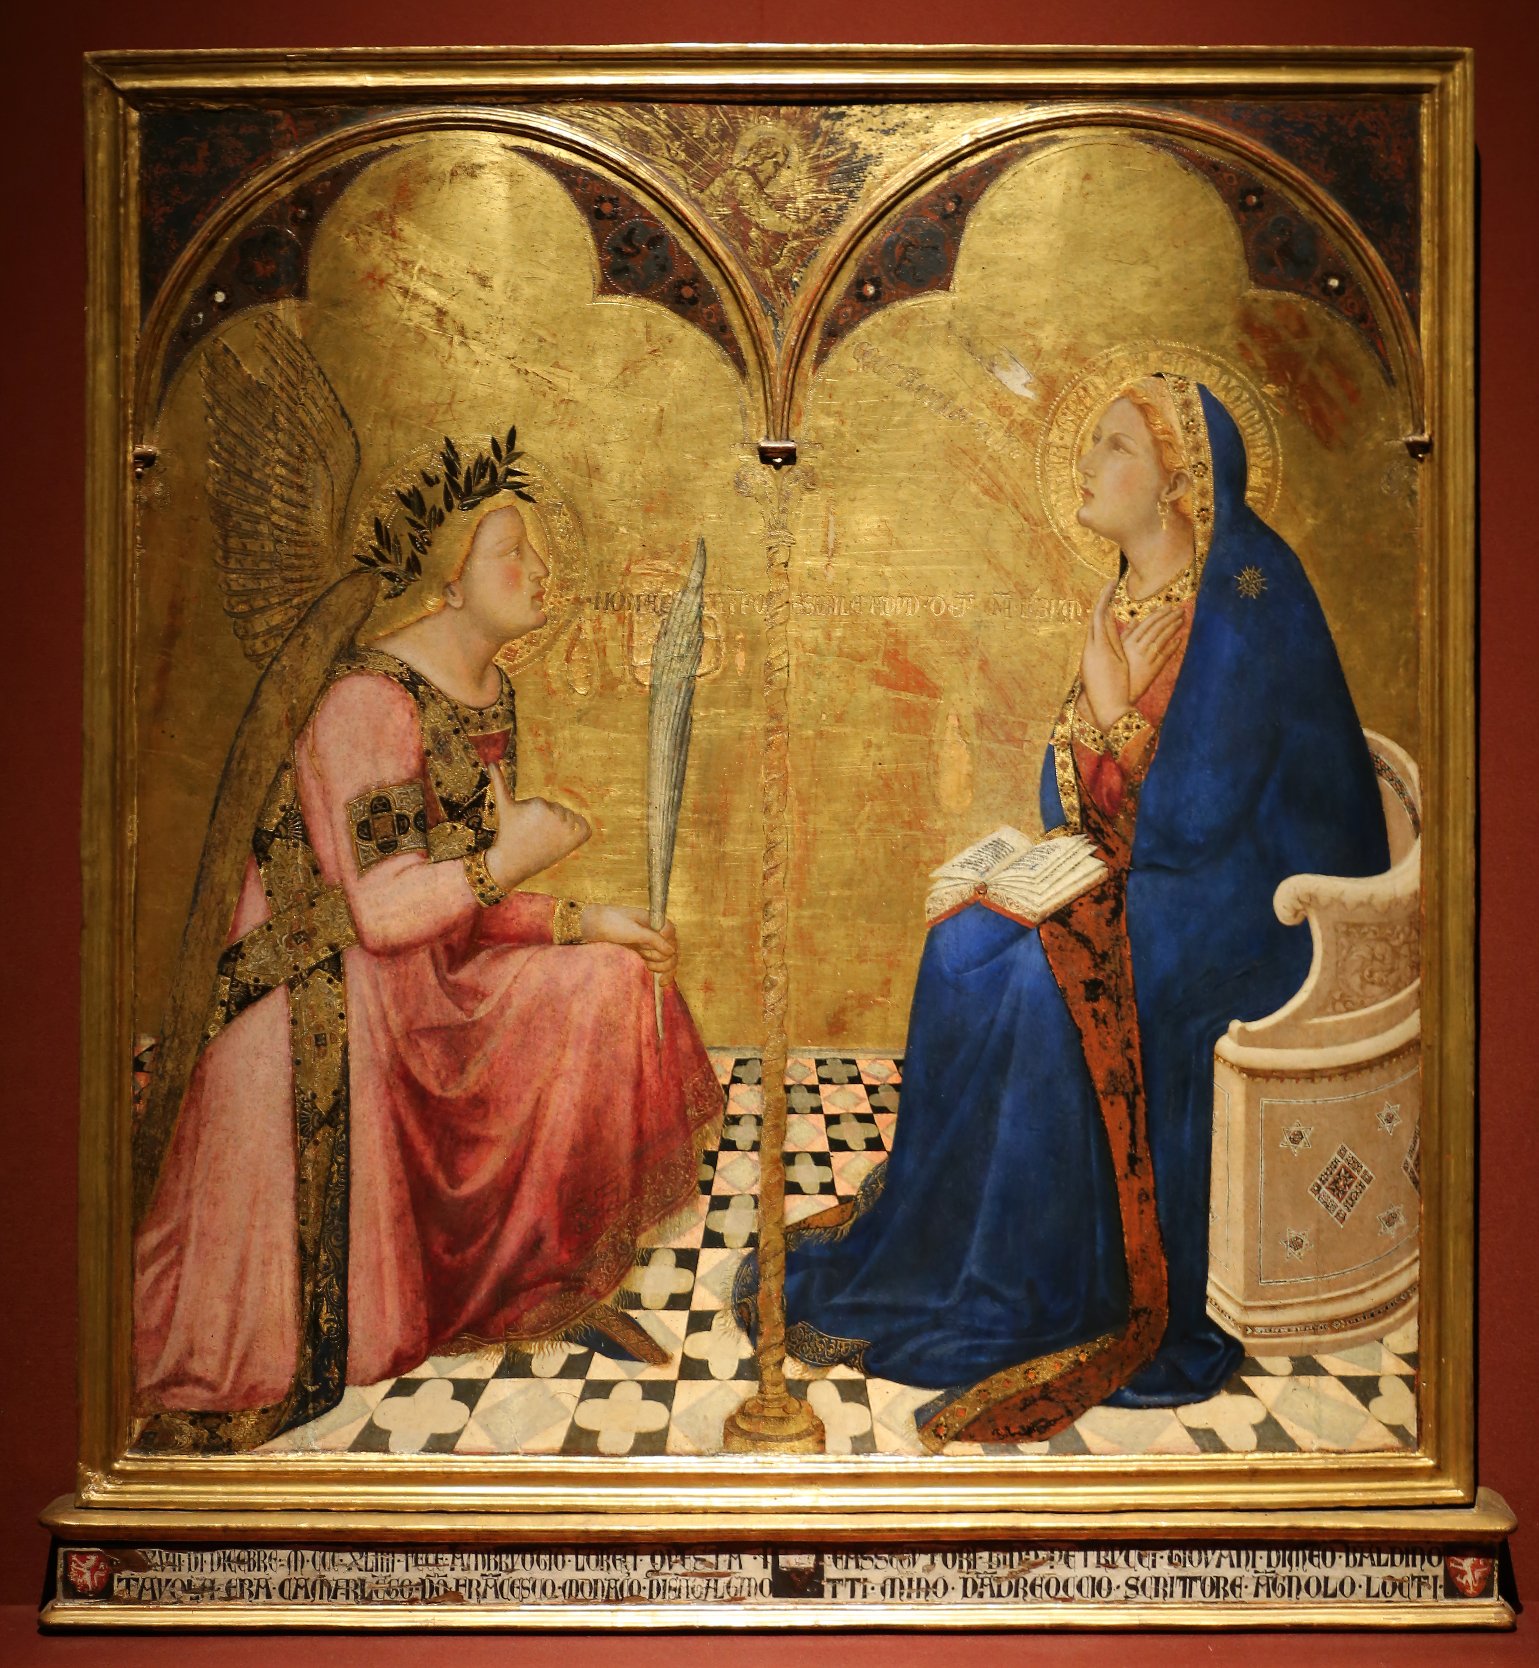 Figura 16. Ambrogio Lorenzetti, Annunciazione, 1301-1308. Conservato nella Pinacoteca Nazionale di Siena. Fonte fotografica: http://www.aiwaz.net/gallery/lorenzetti-ambrogio/gc57